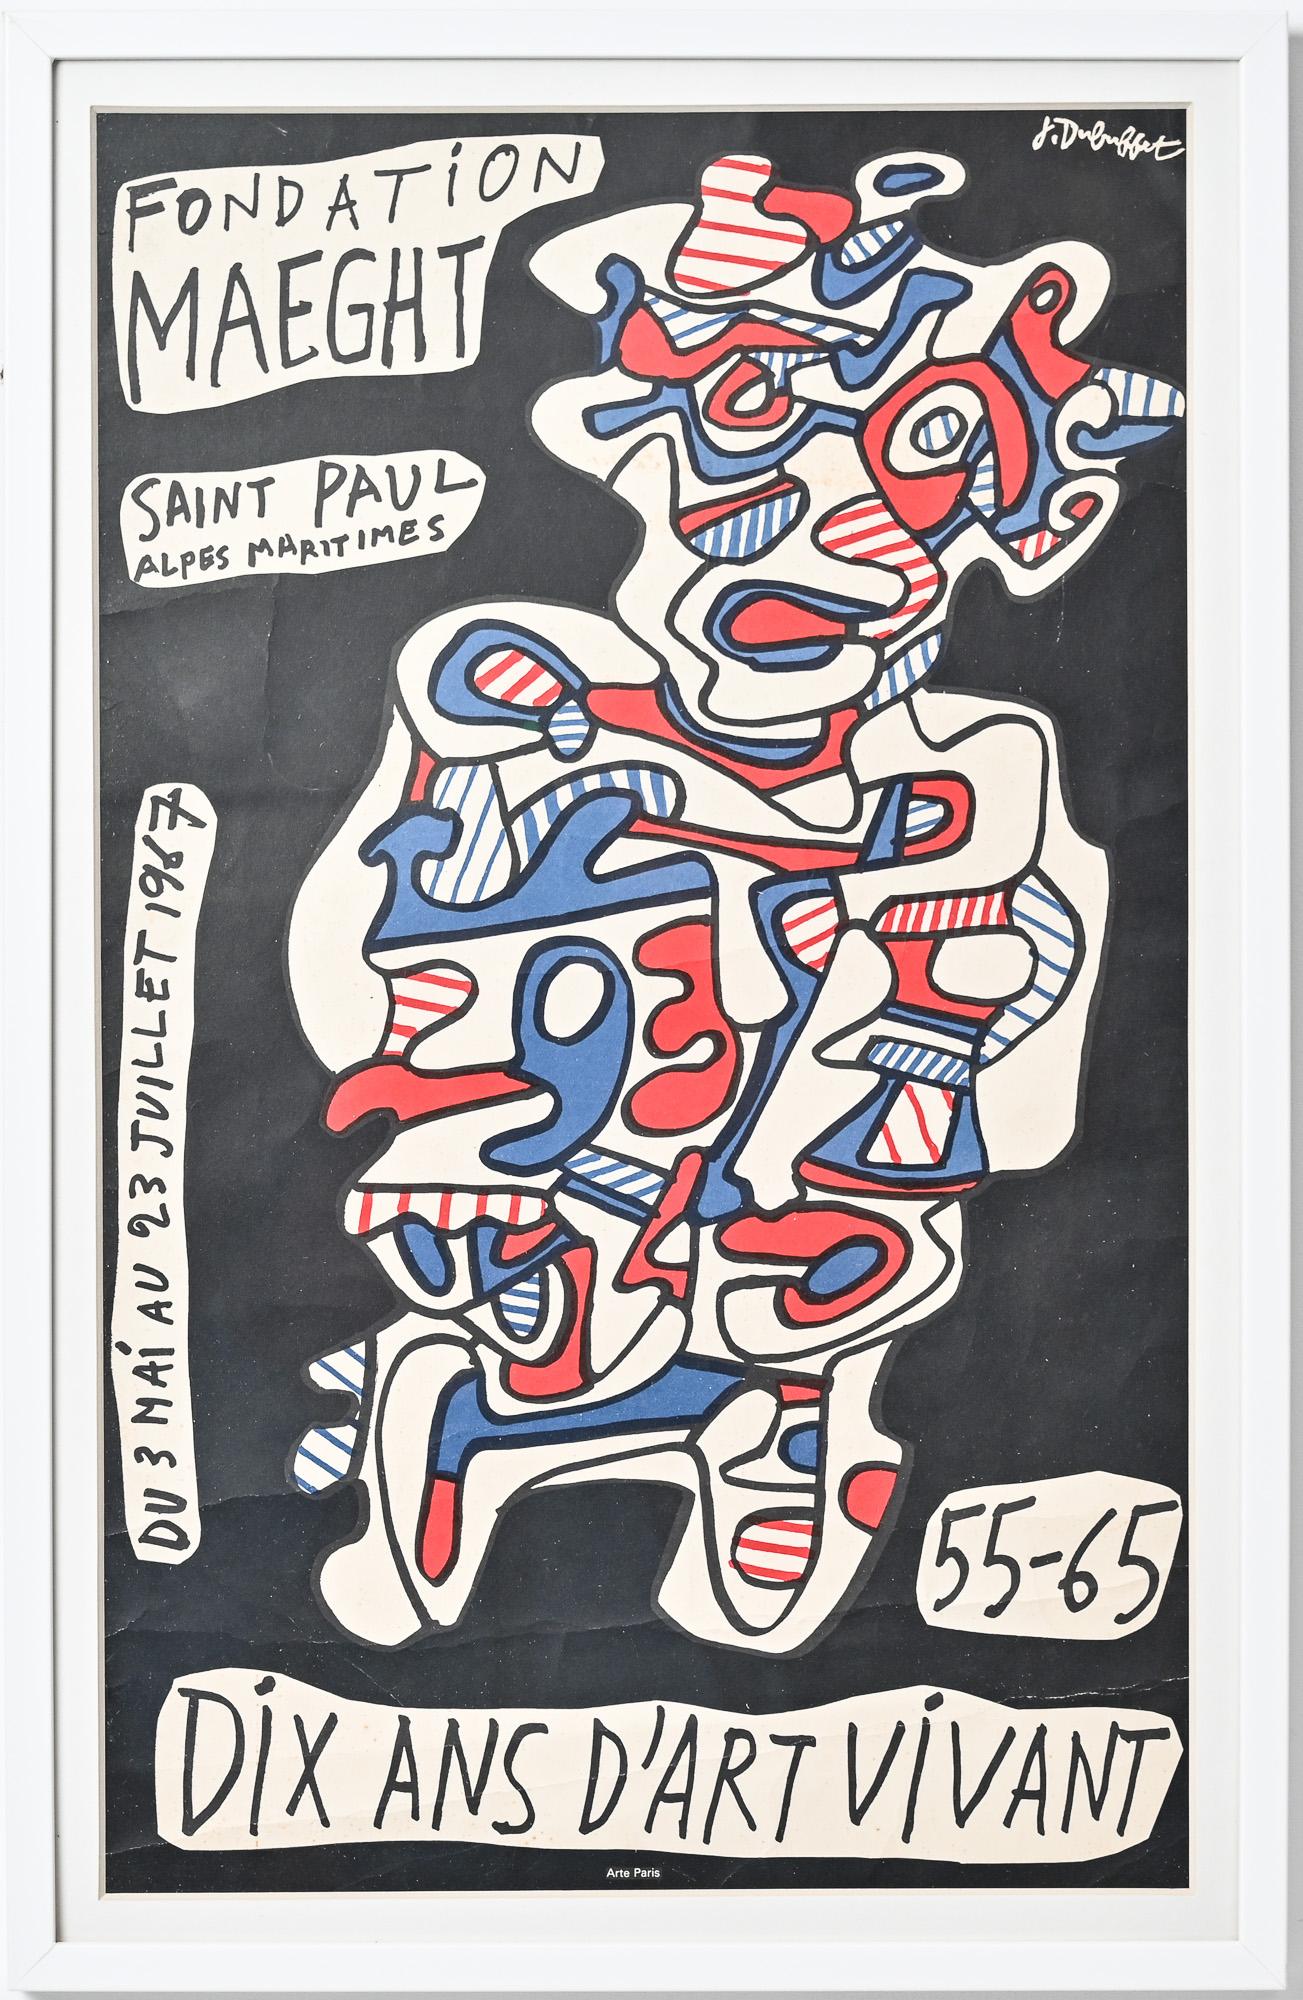 Français Jean Dubuffet poster vintage 10 ans d'art vivant 55 - 65 en vente